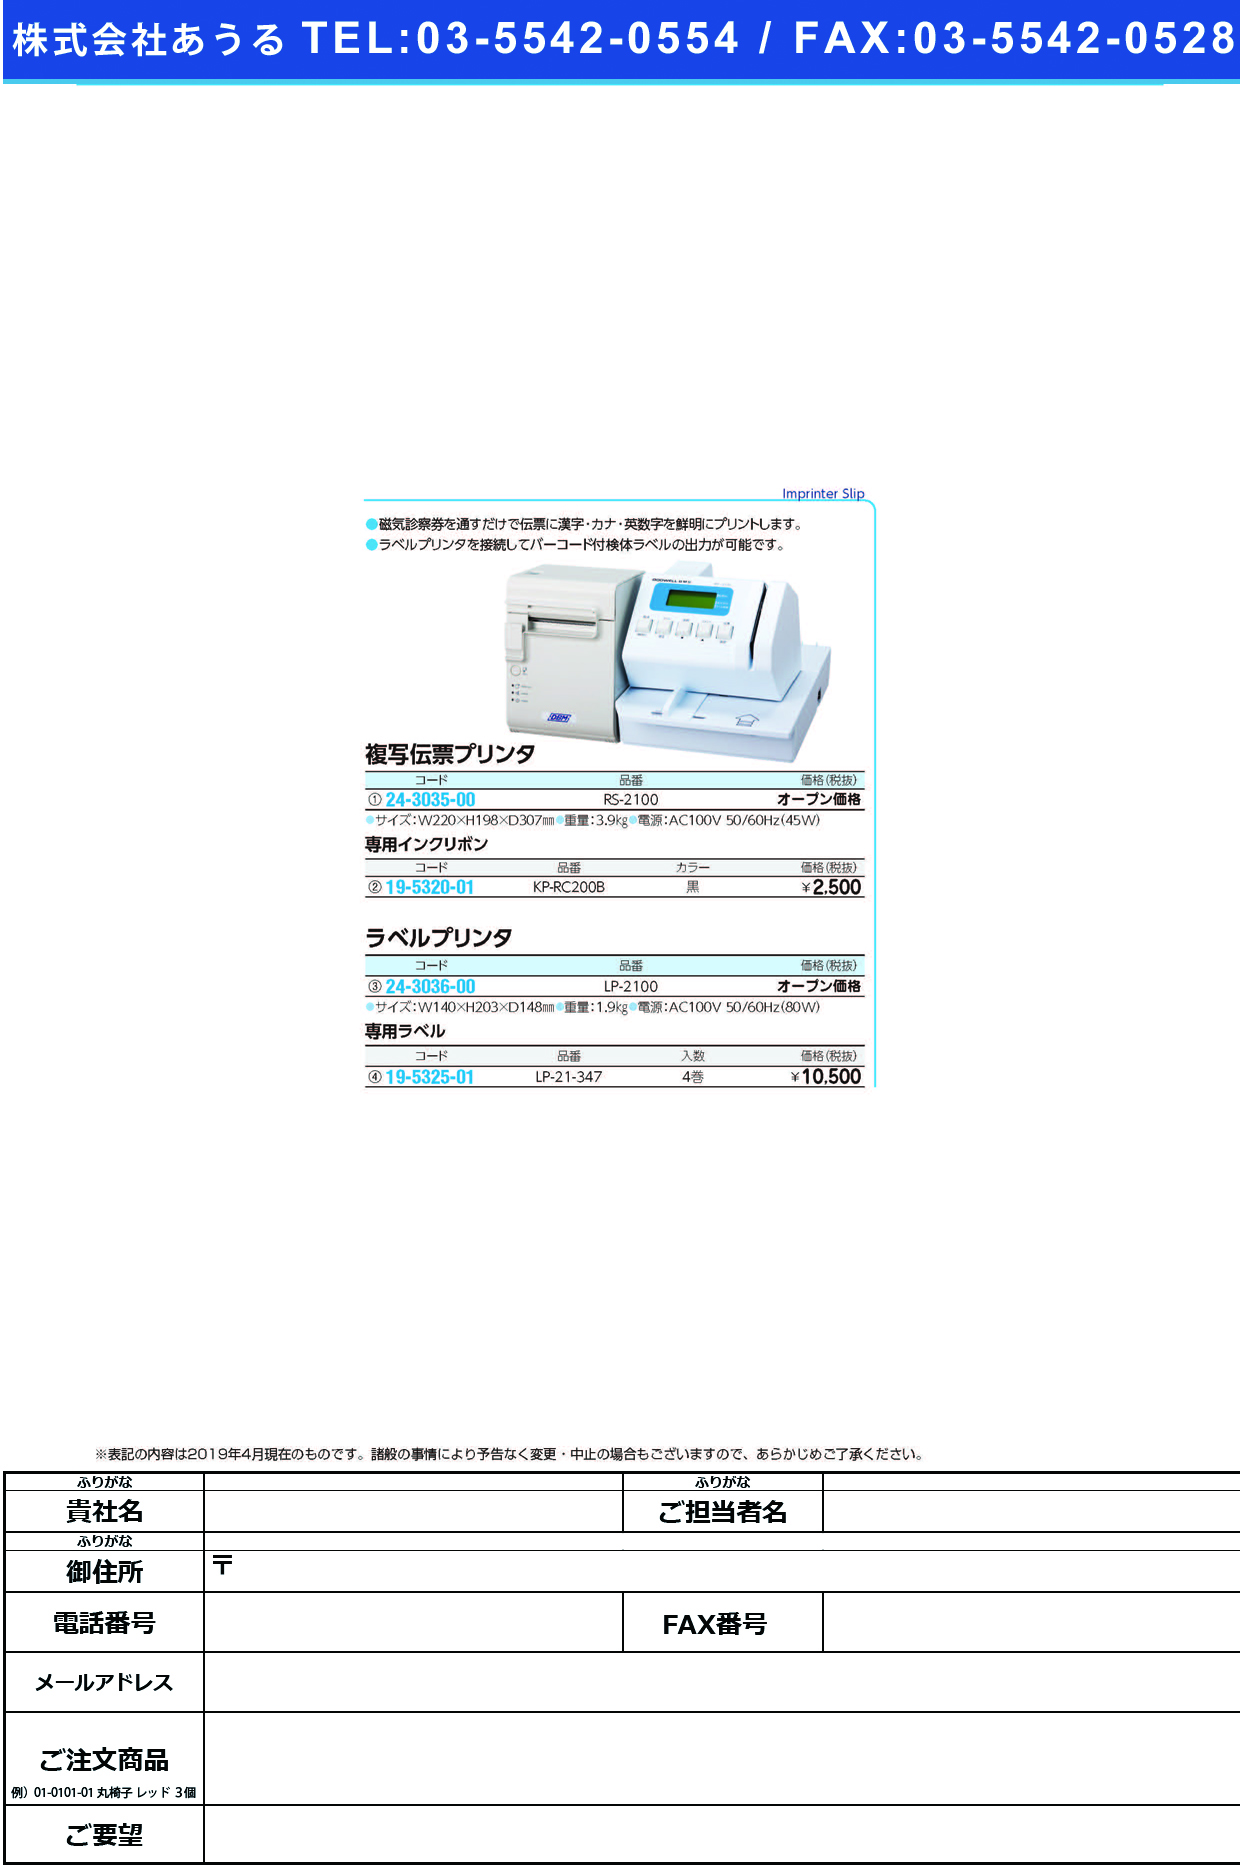 (19-5325-01)ラベルプリンター用ラベル LP-1800･2100ﾖｳ(4ｶﾝｲﾘ ﾗﾍﾞﾙﾌﾟﾘﾝﾀｰﾖｳﾗﾍﾞﾙ【1箱単位】【2019年カタログ商品】